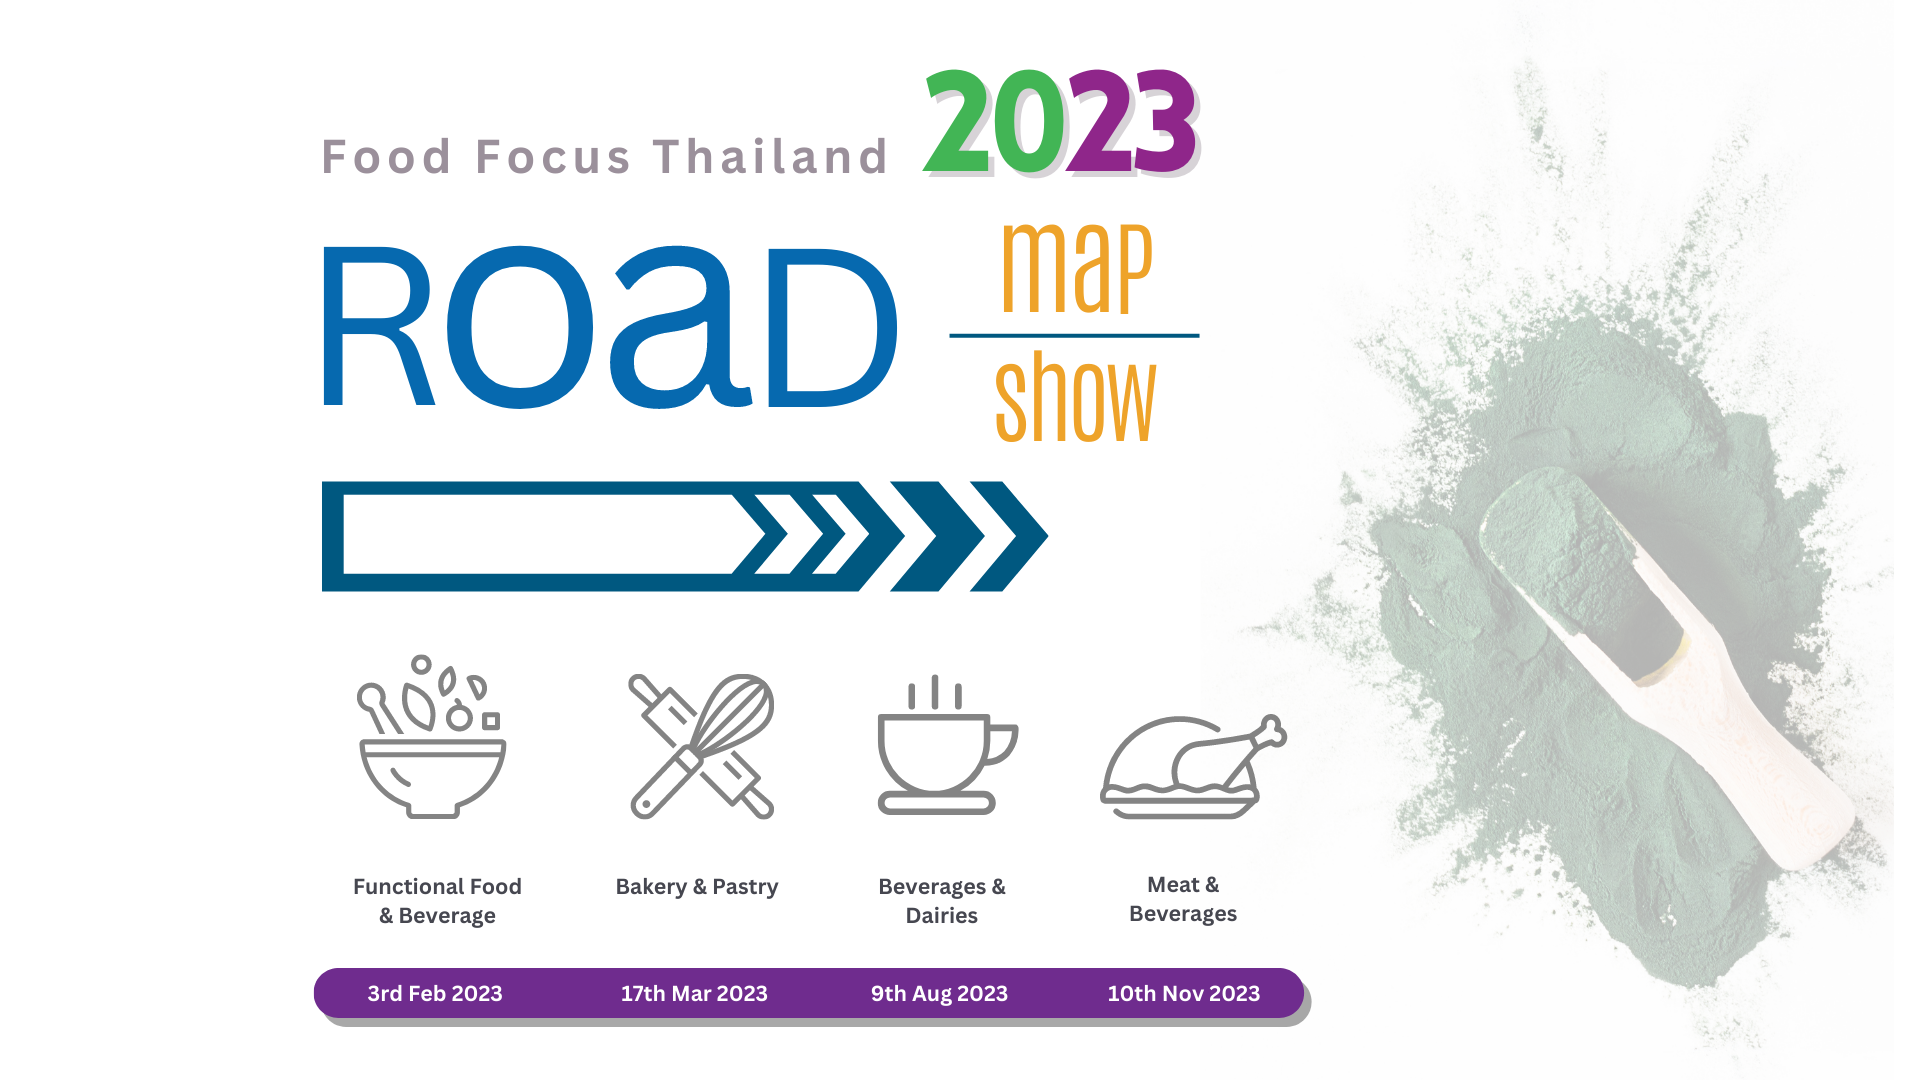 Food Focus Thailand Events 2023